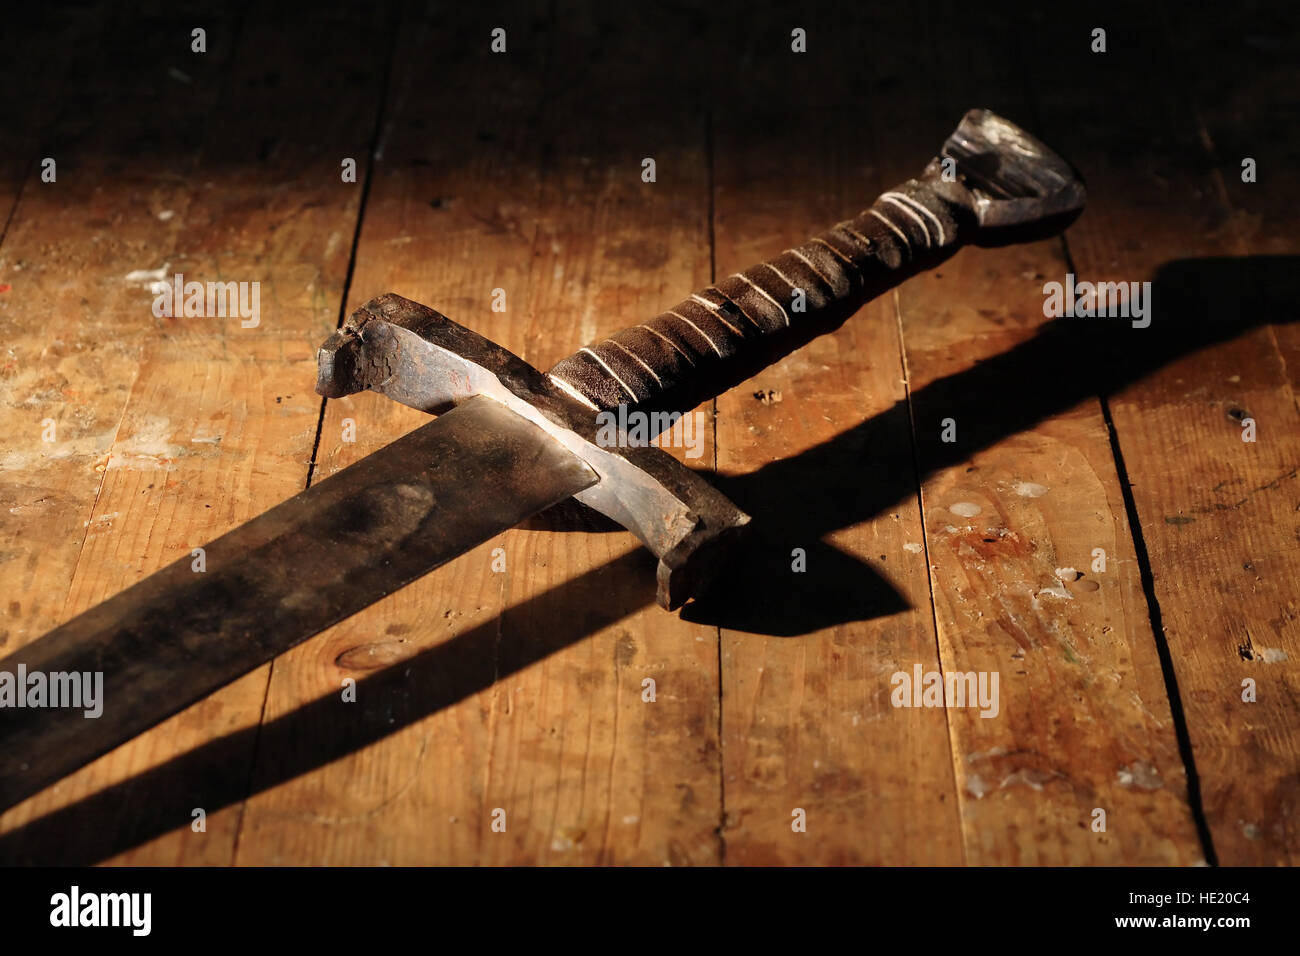 Symbole de la guerre. Chevalier médiéval épée sur surface en bois sale Banque D'Images